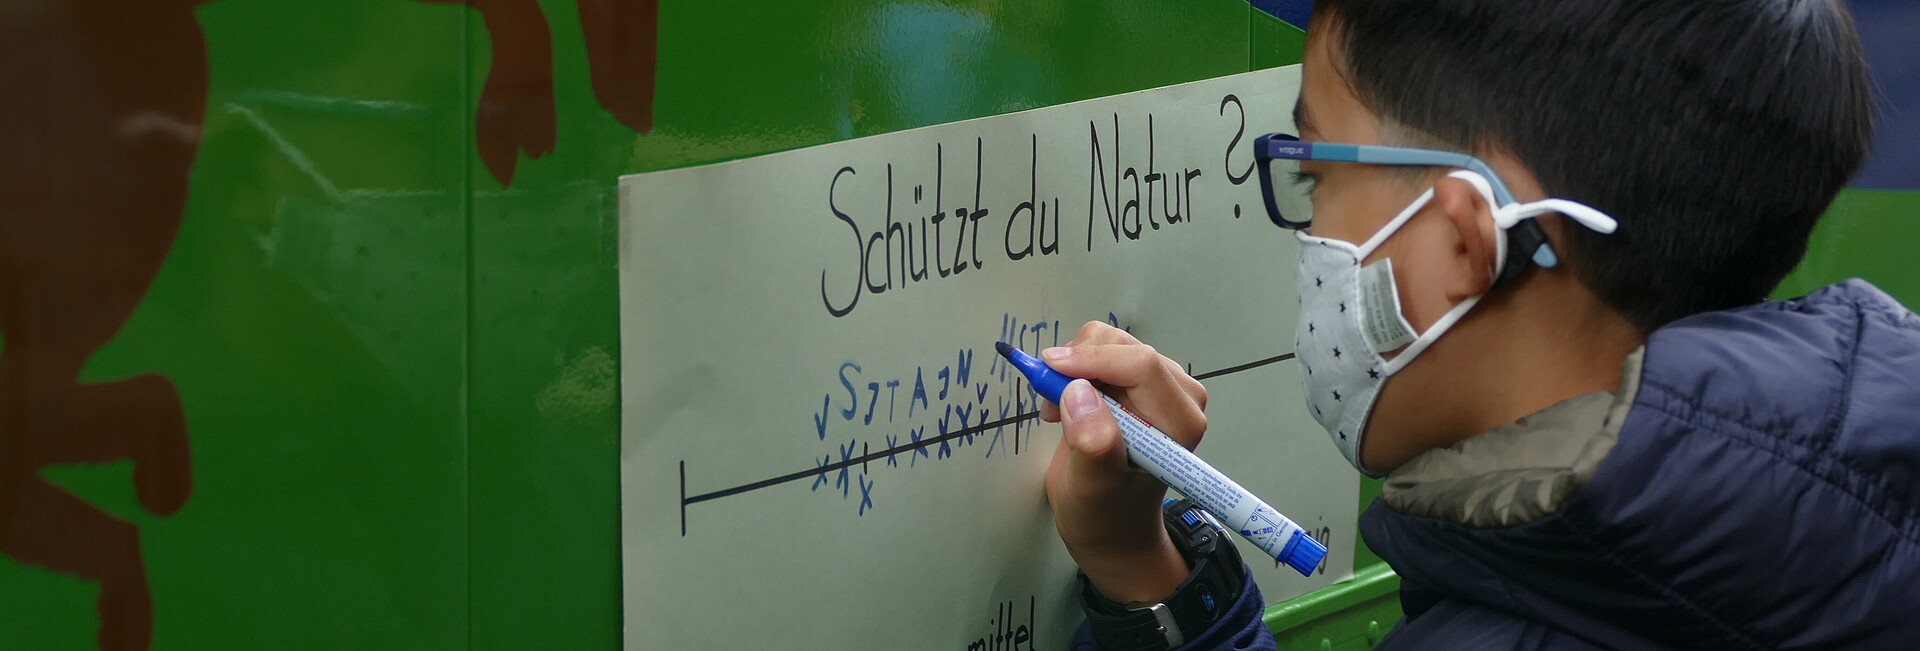 Schützt du die Natur? Junge notiert seine Antwort auf einen Zettel auf dem Ökomobil